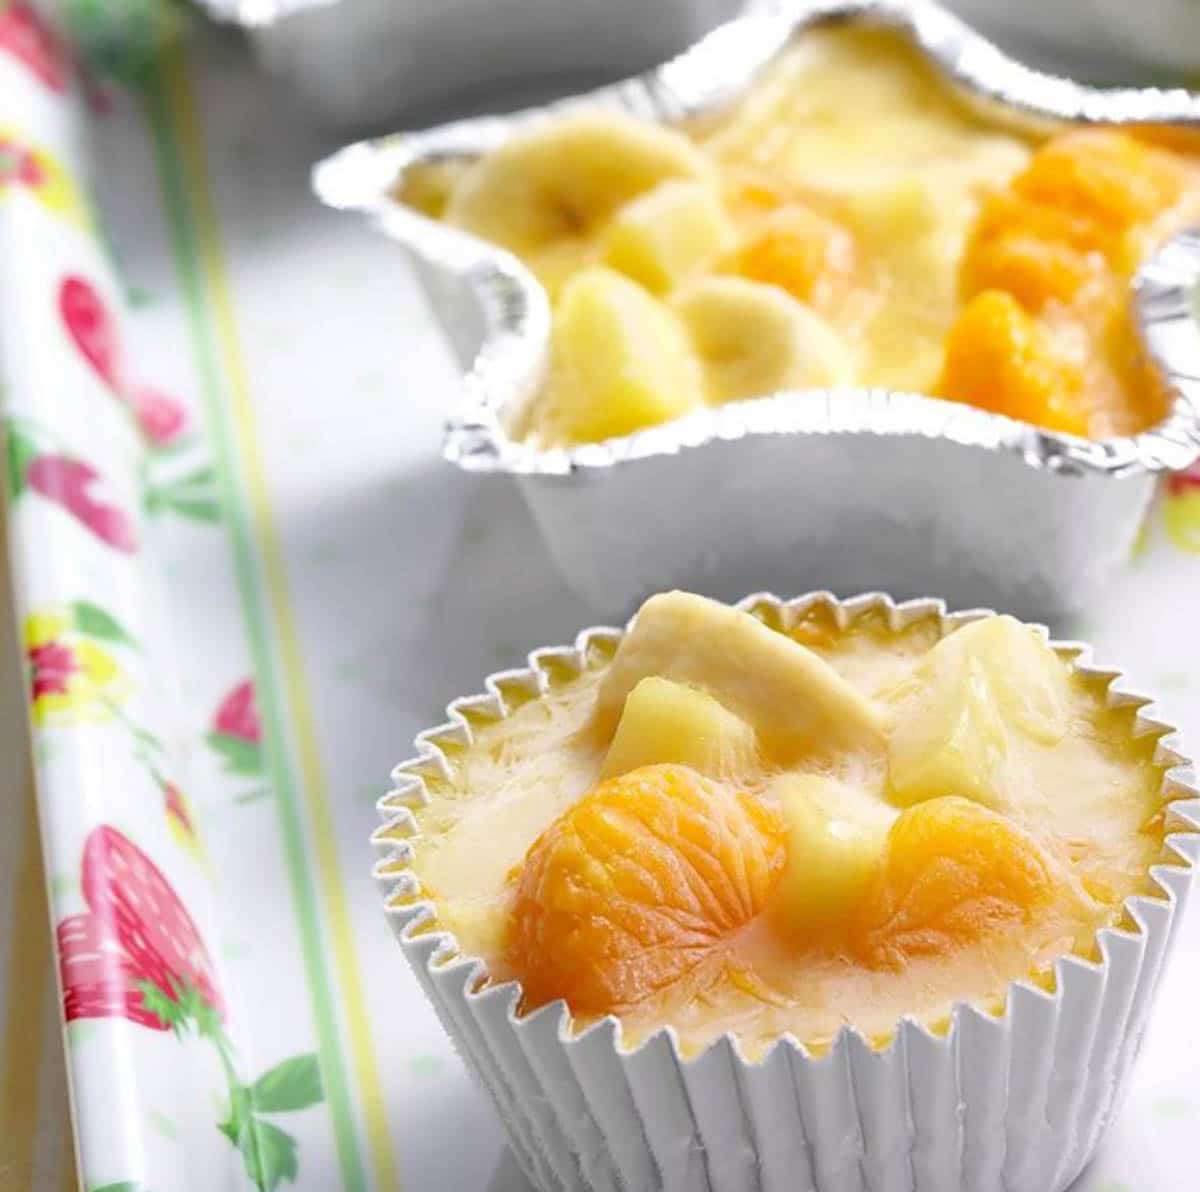 Frozen Citrus Fruit Cups in cupcake molds